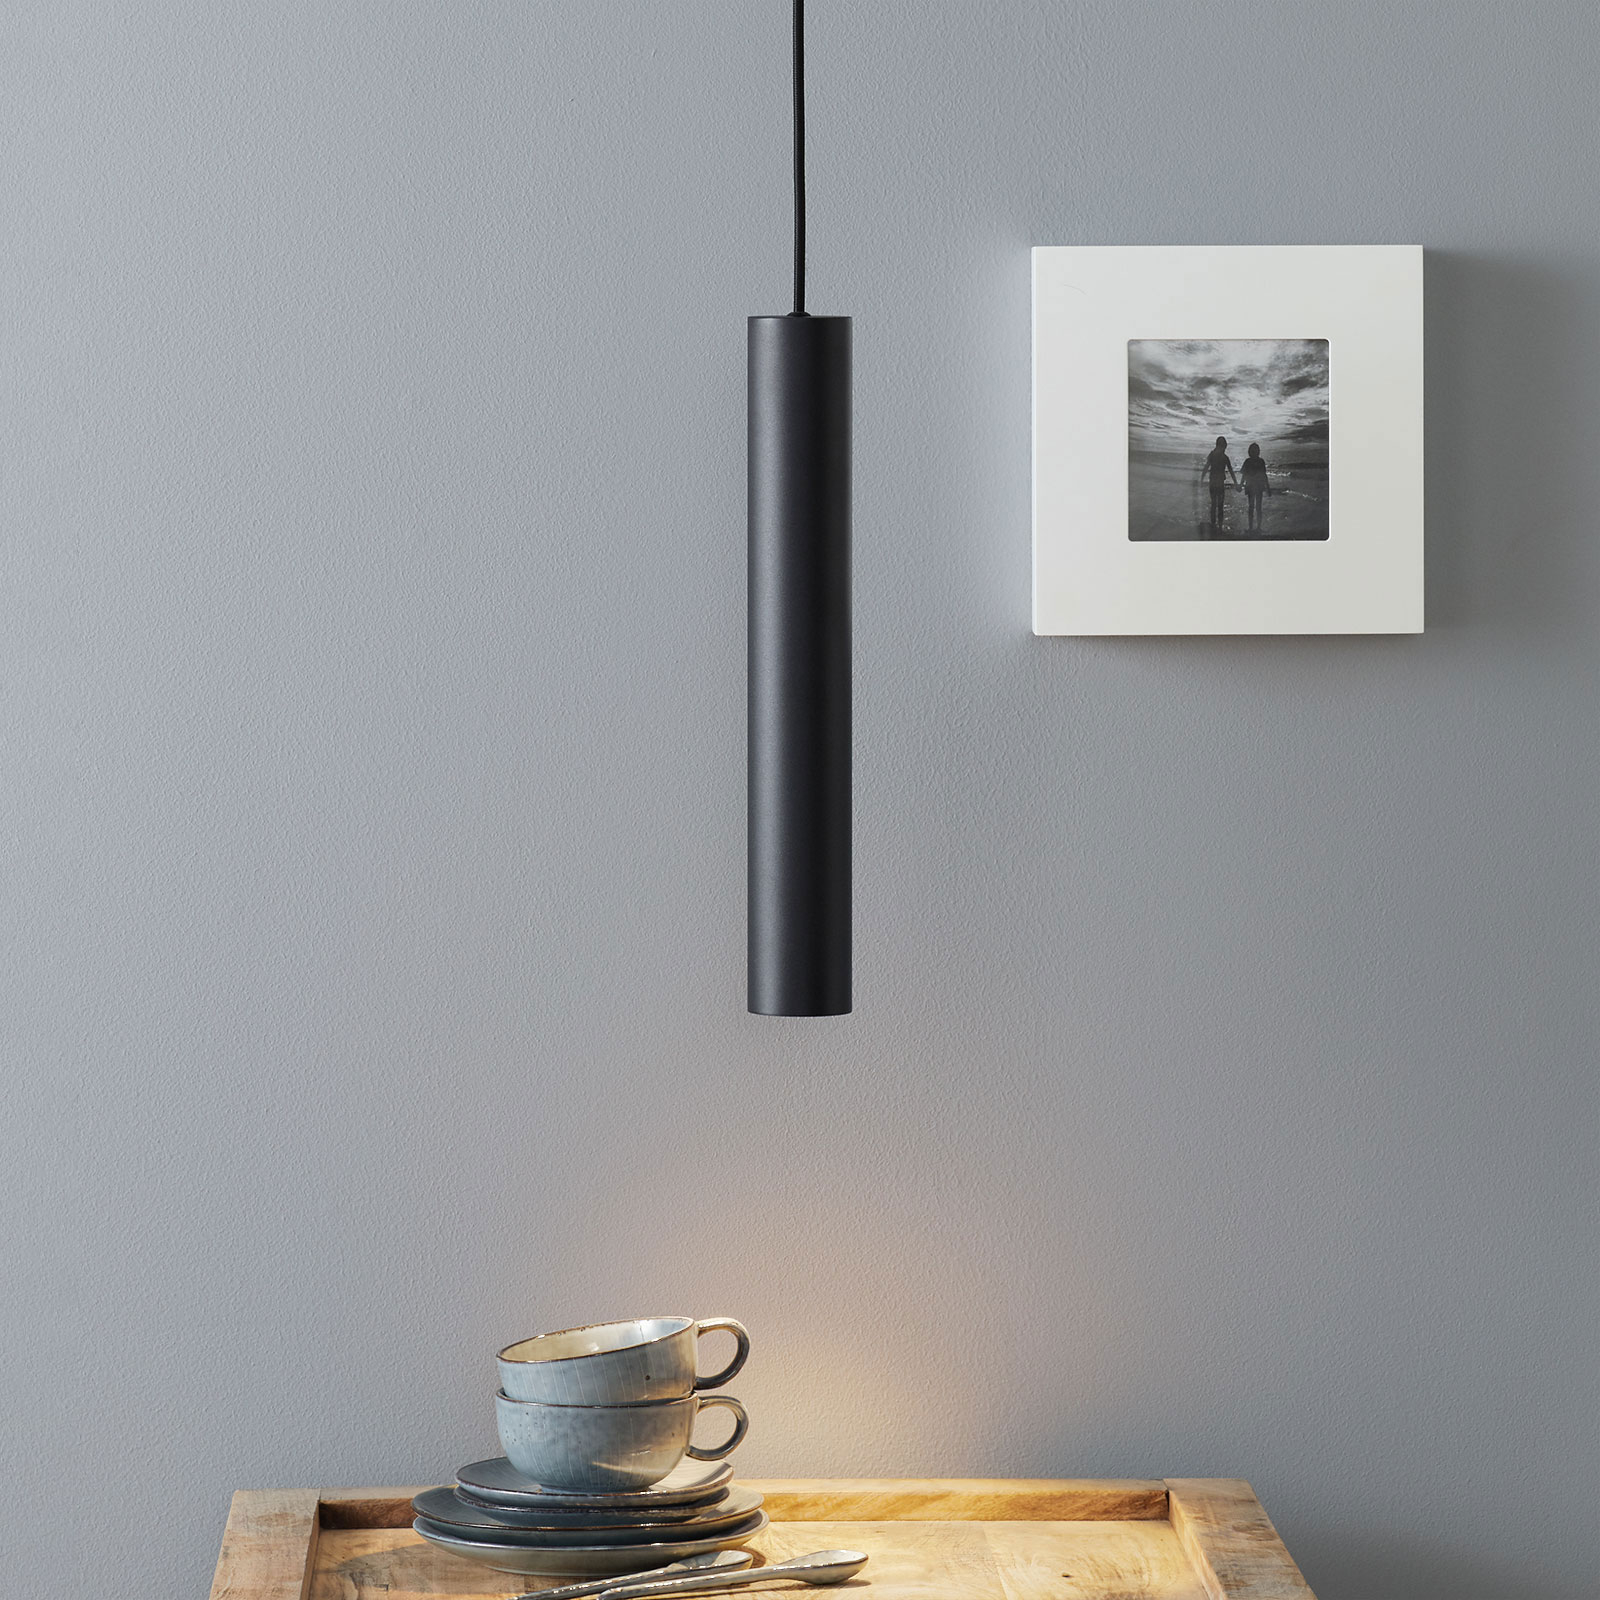 Dwars zitten sofa Gewaad LED hanglamp look in smalle vorm, zwart | Lampen24.nl